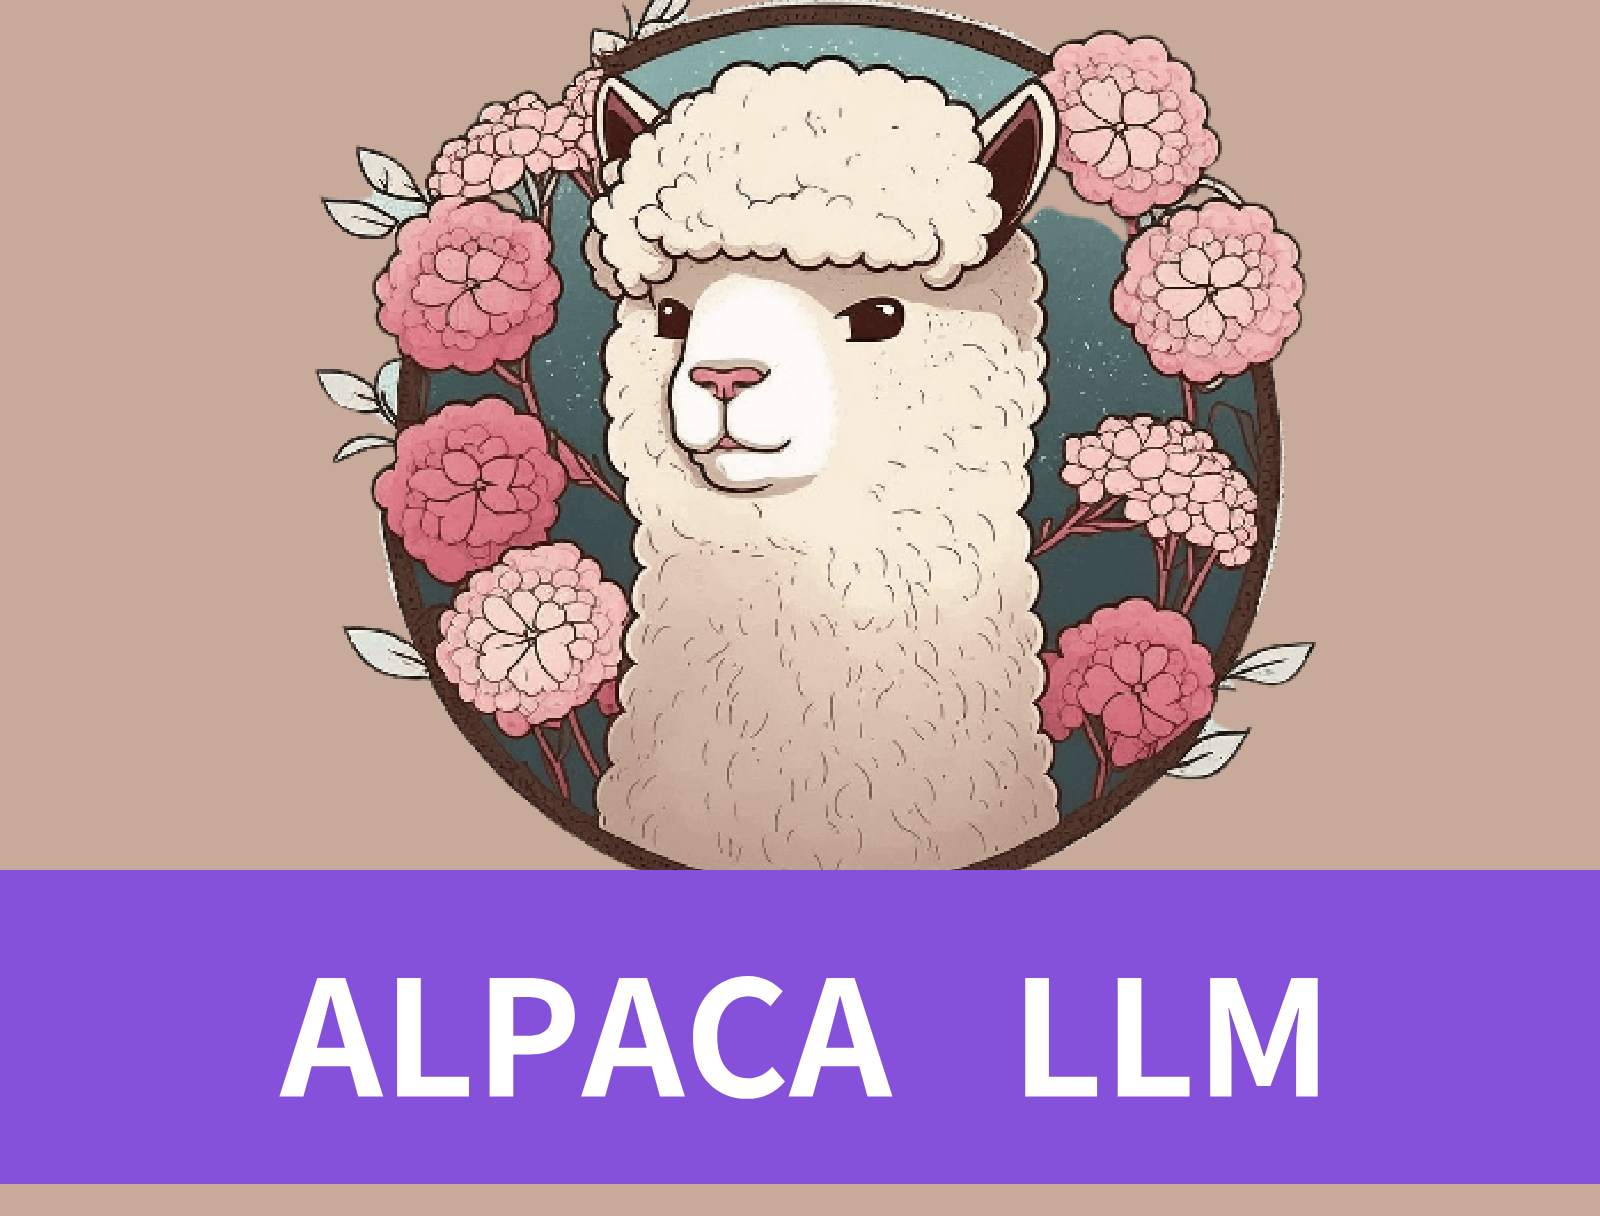 Exploring Alpaca LLM: Advantages, Disadvantages, and Applications